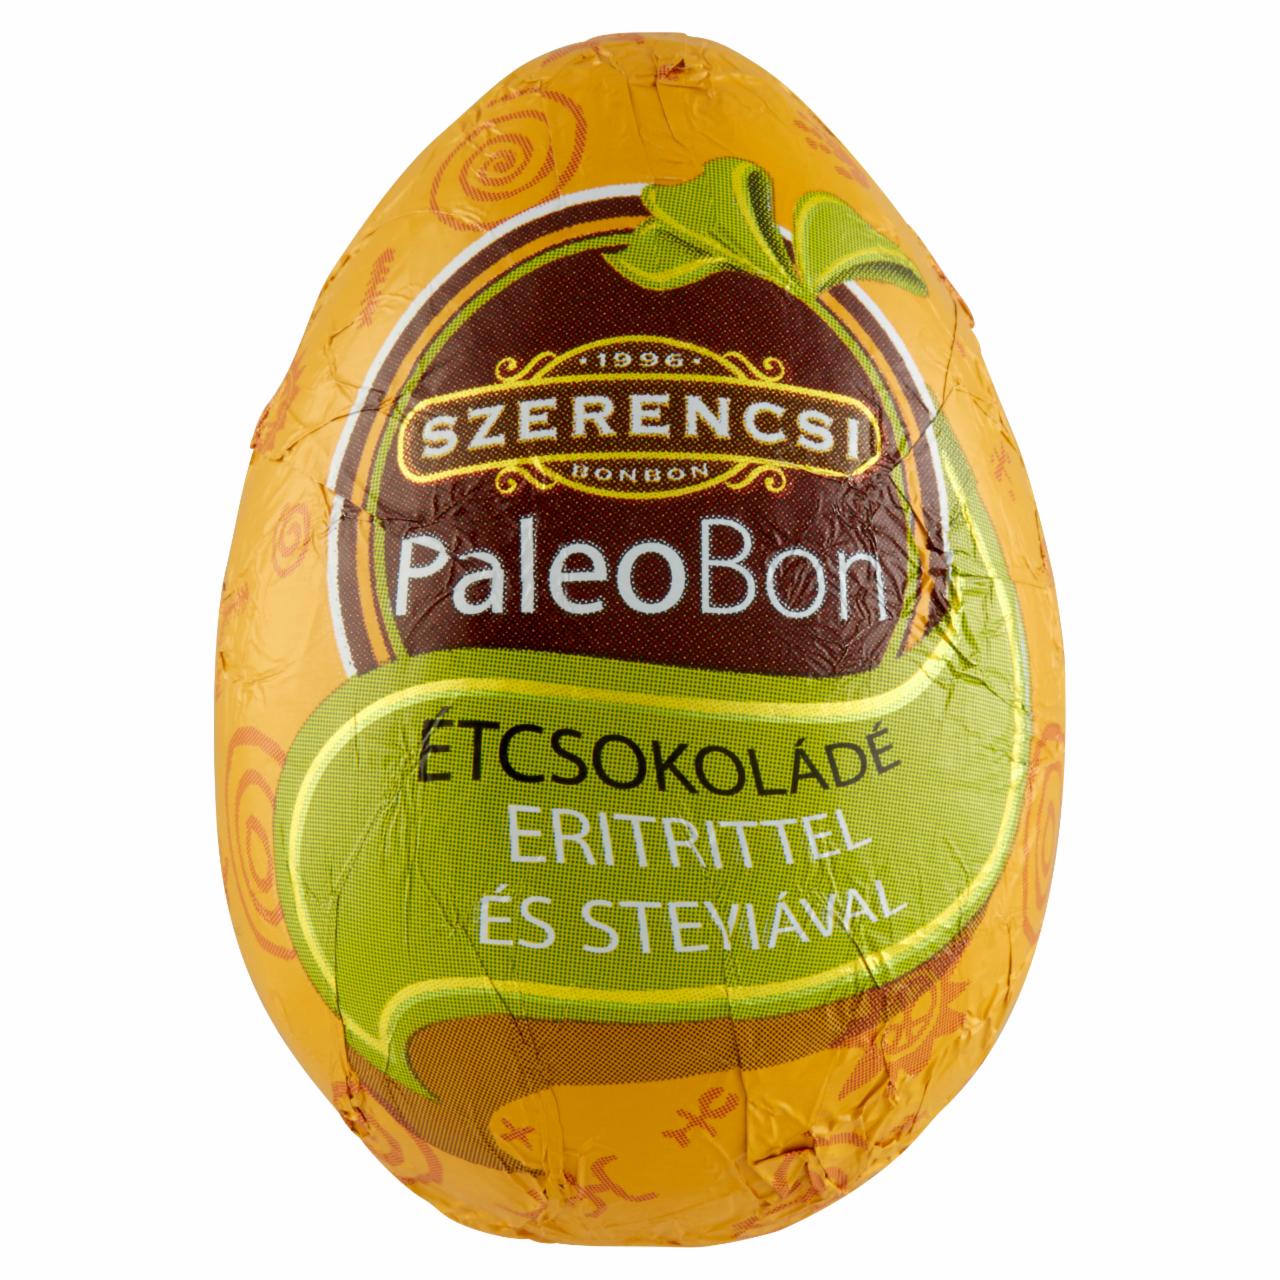 Képek - Szerencsi PaleoBon tojás figura étcsokoládéból édesítőszerekkel 20 g